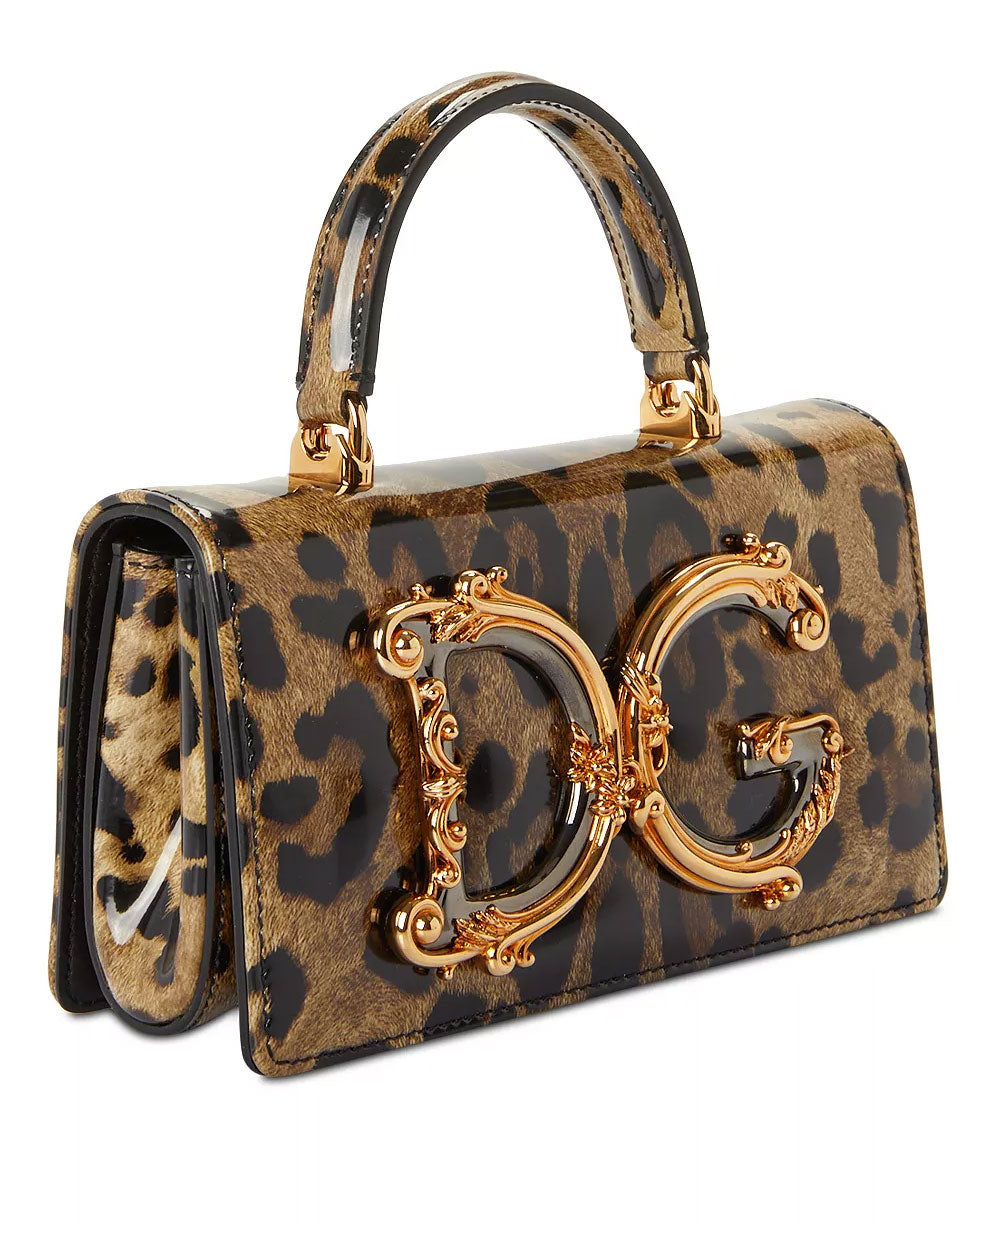 DG Girls Top Handle Bag in Leopard